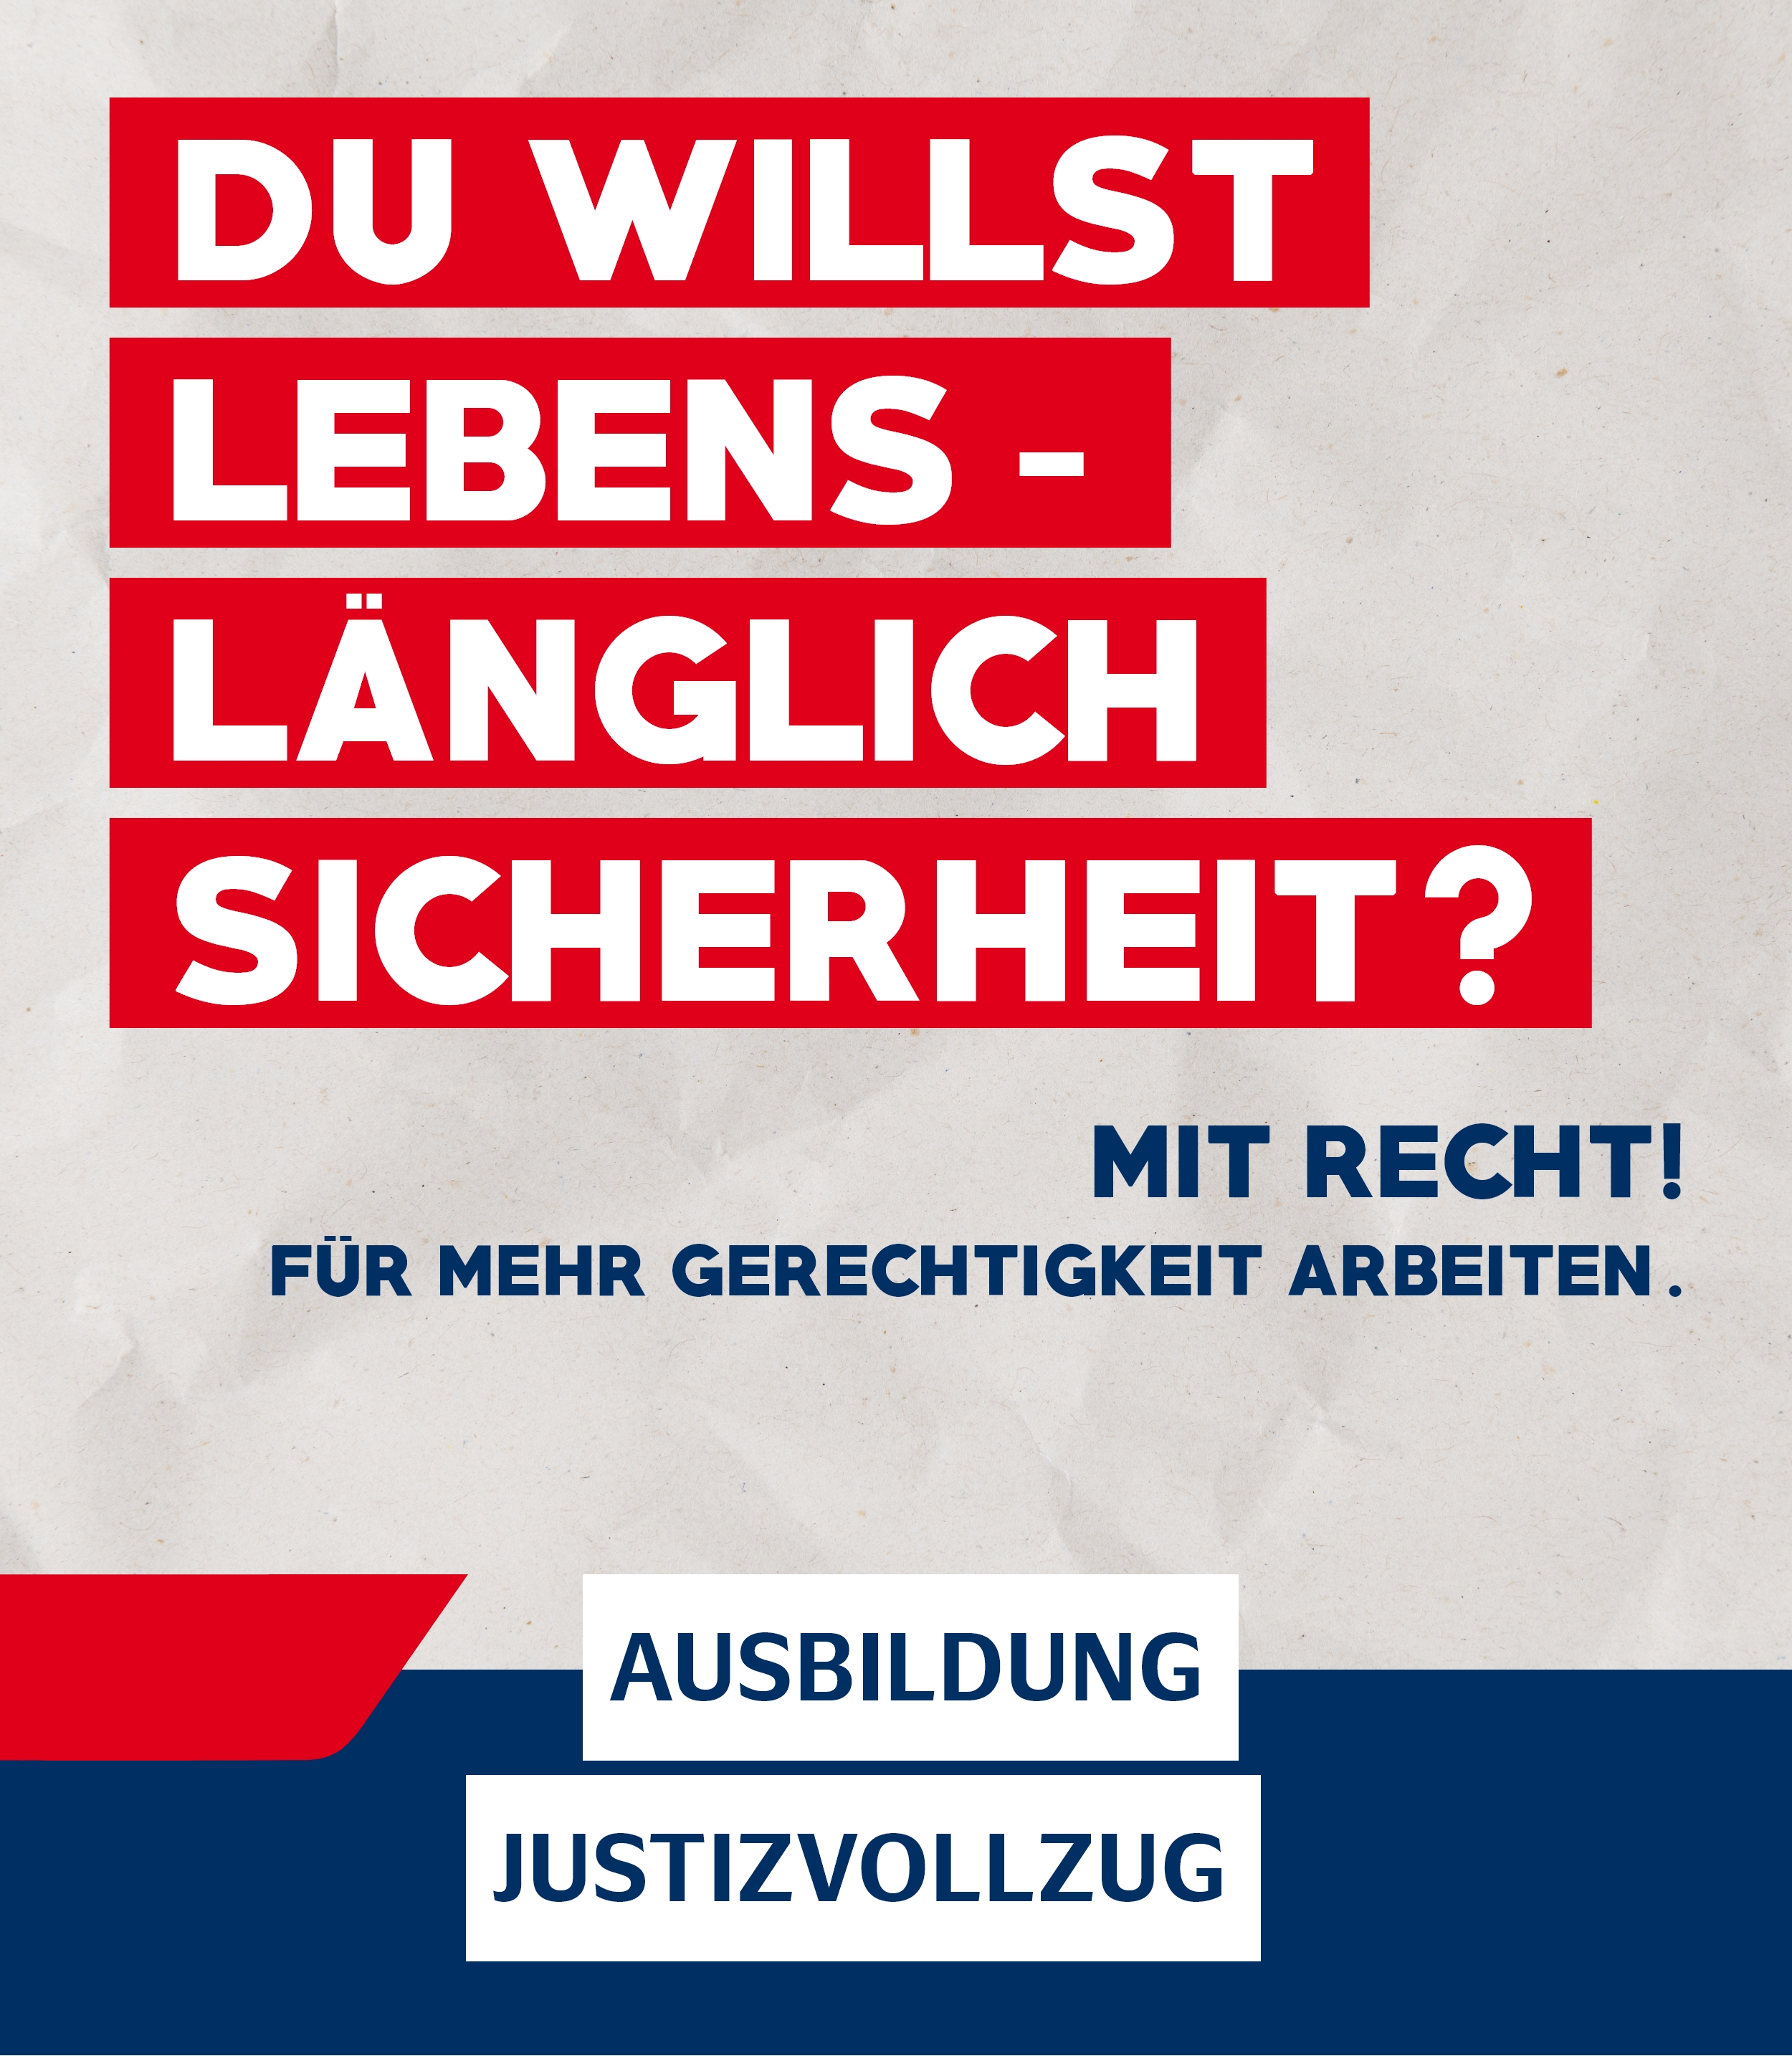 Ein Plakat mit der Aufschrift: "Du willst lebenslänglich Sicherheit. Mit Recht! Für mehr Gerechtigkeit arbeiten. Ausbildung Justizvollzug"